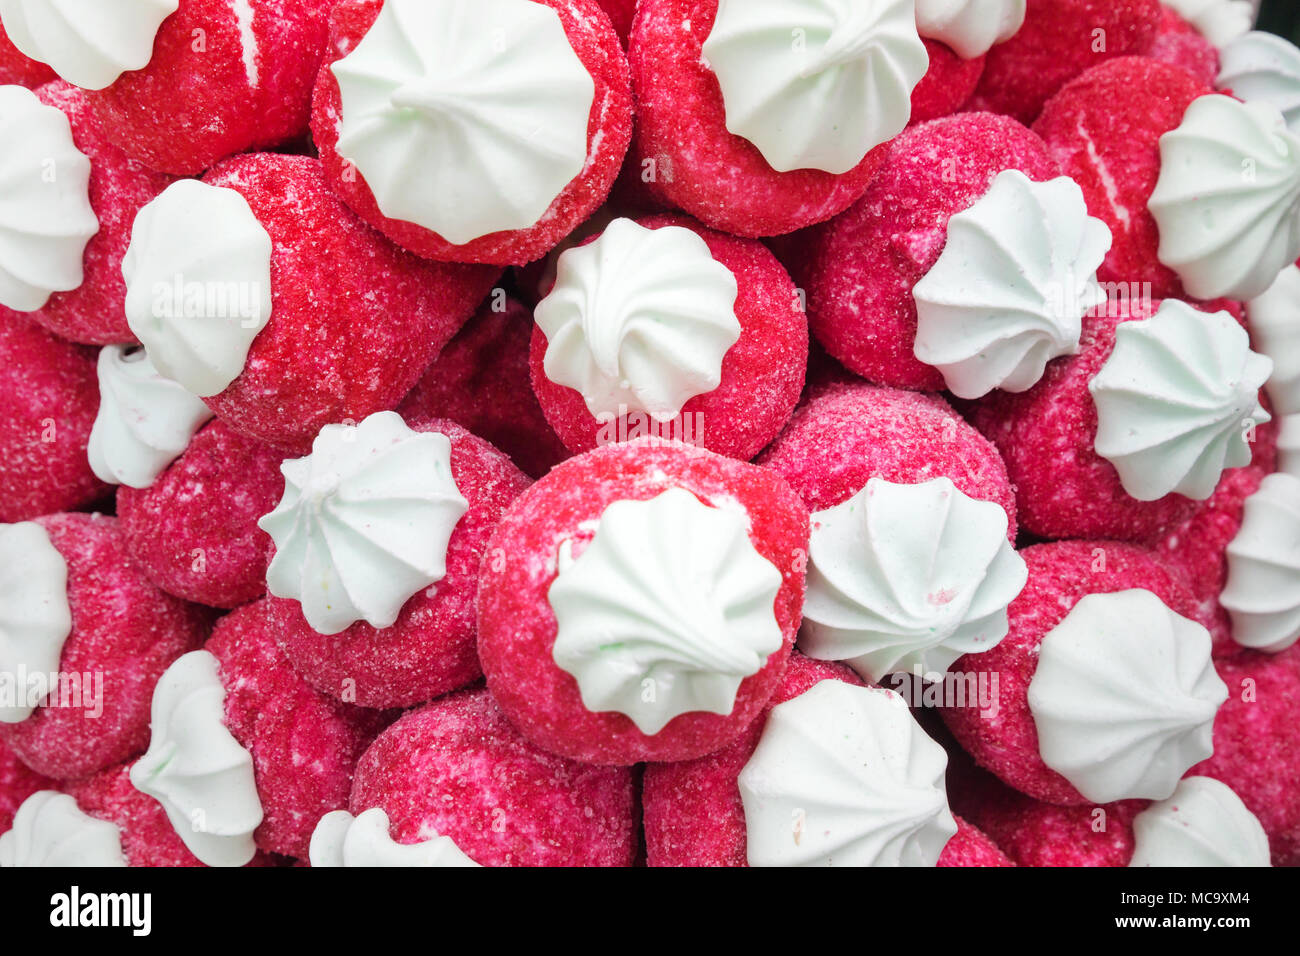 Wählen Sie konzentrieren. Süße Candy ist für Verkaufen im Markt entwickelt. Stockfoto